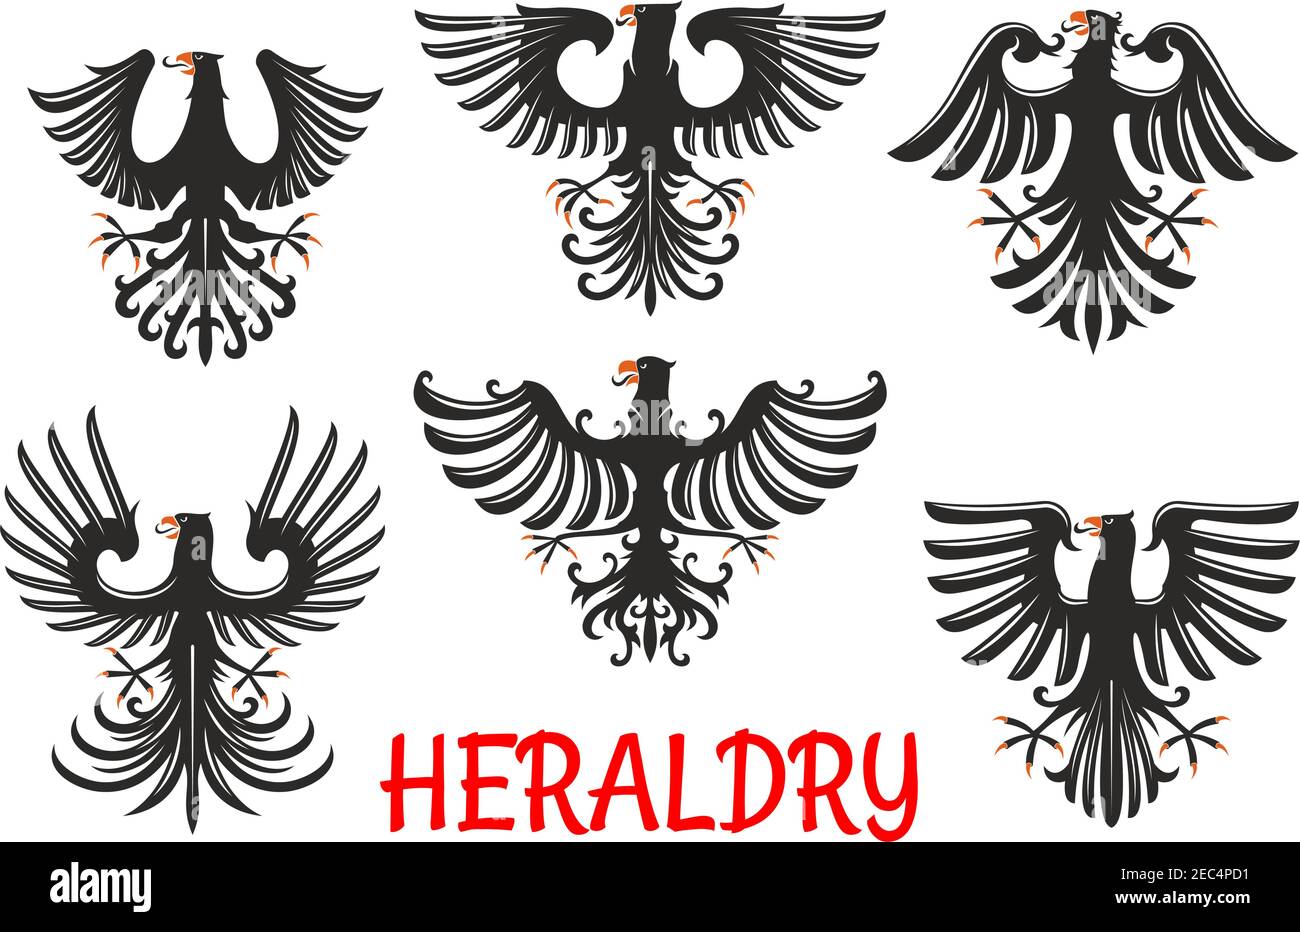 Schwarze Adler heraldische Greifvögel mit erhobenen und ausgestreckten Flügeln mit spitzen Federn nach oben. Wappen und Wappen Stock Vektor